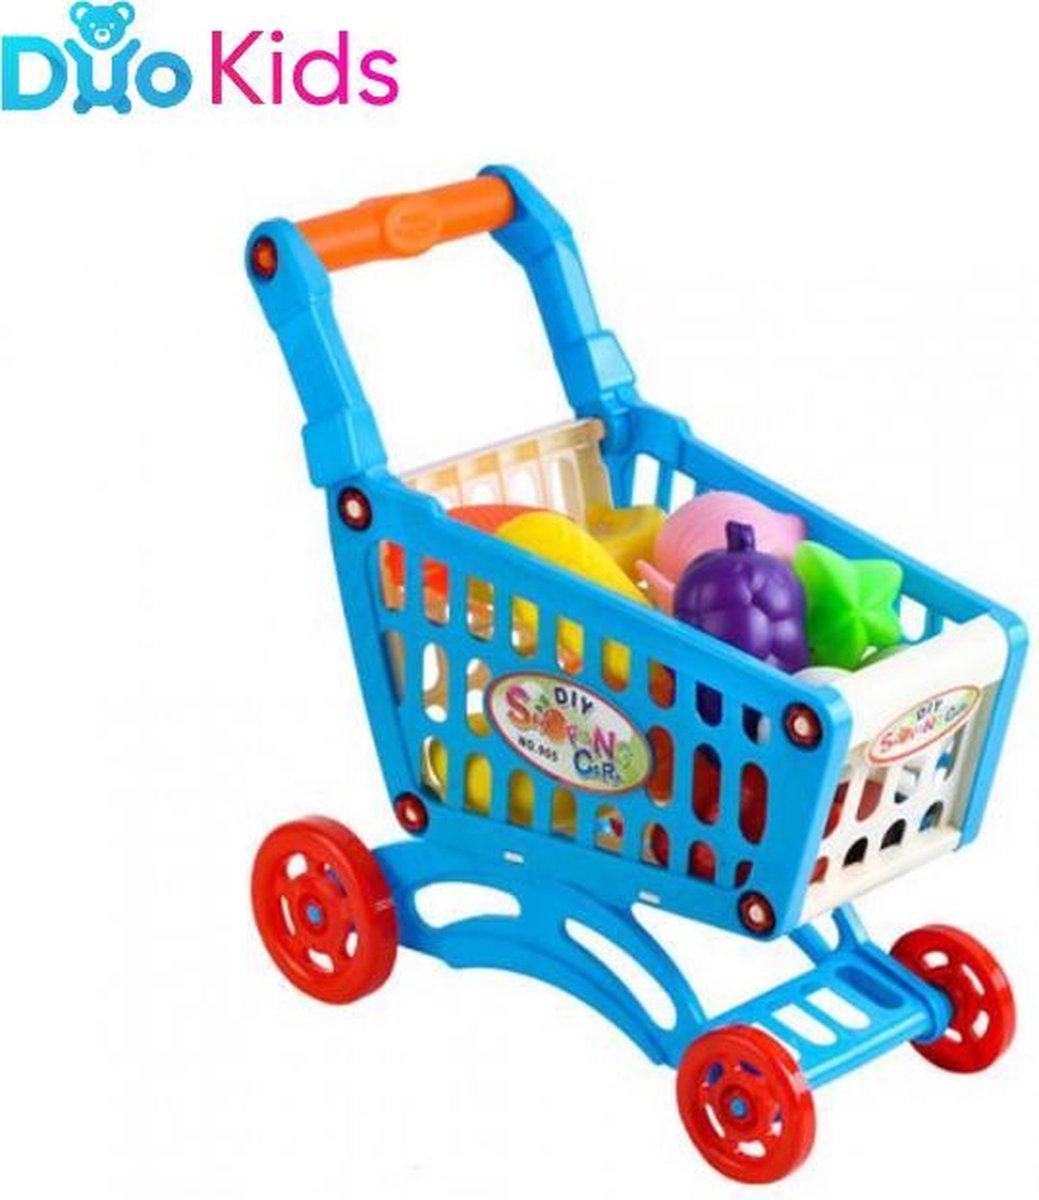 Duo Kids - 'Doe zelf boodschappen!' - Winkelwagen Speelgoed Meisjes / Jongens - Shoppen Eten - Kinderen Winkelwagentje - boodschappenwagen - Duo Kids